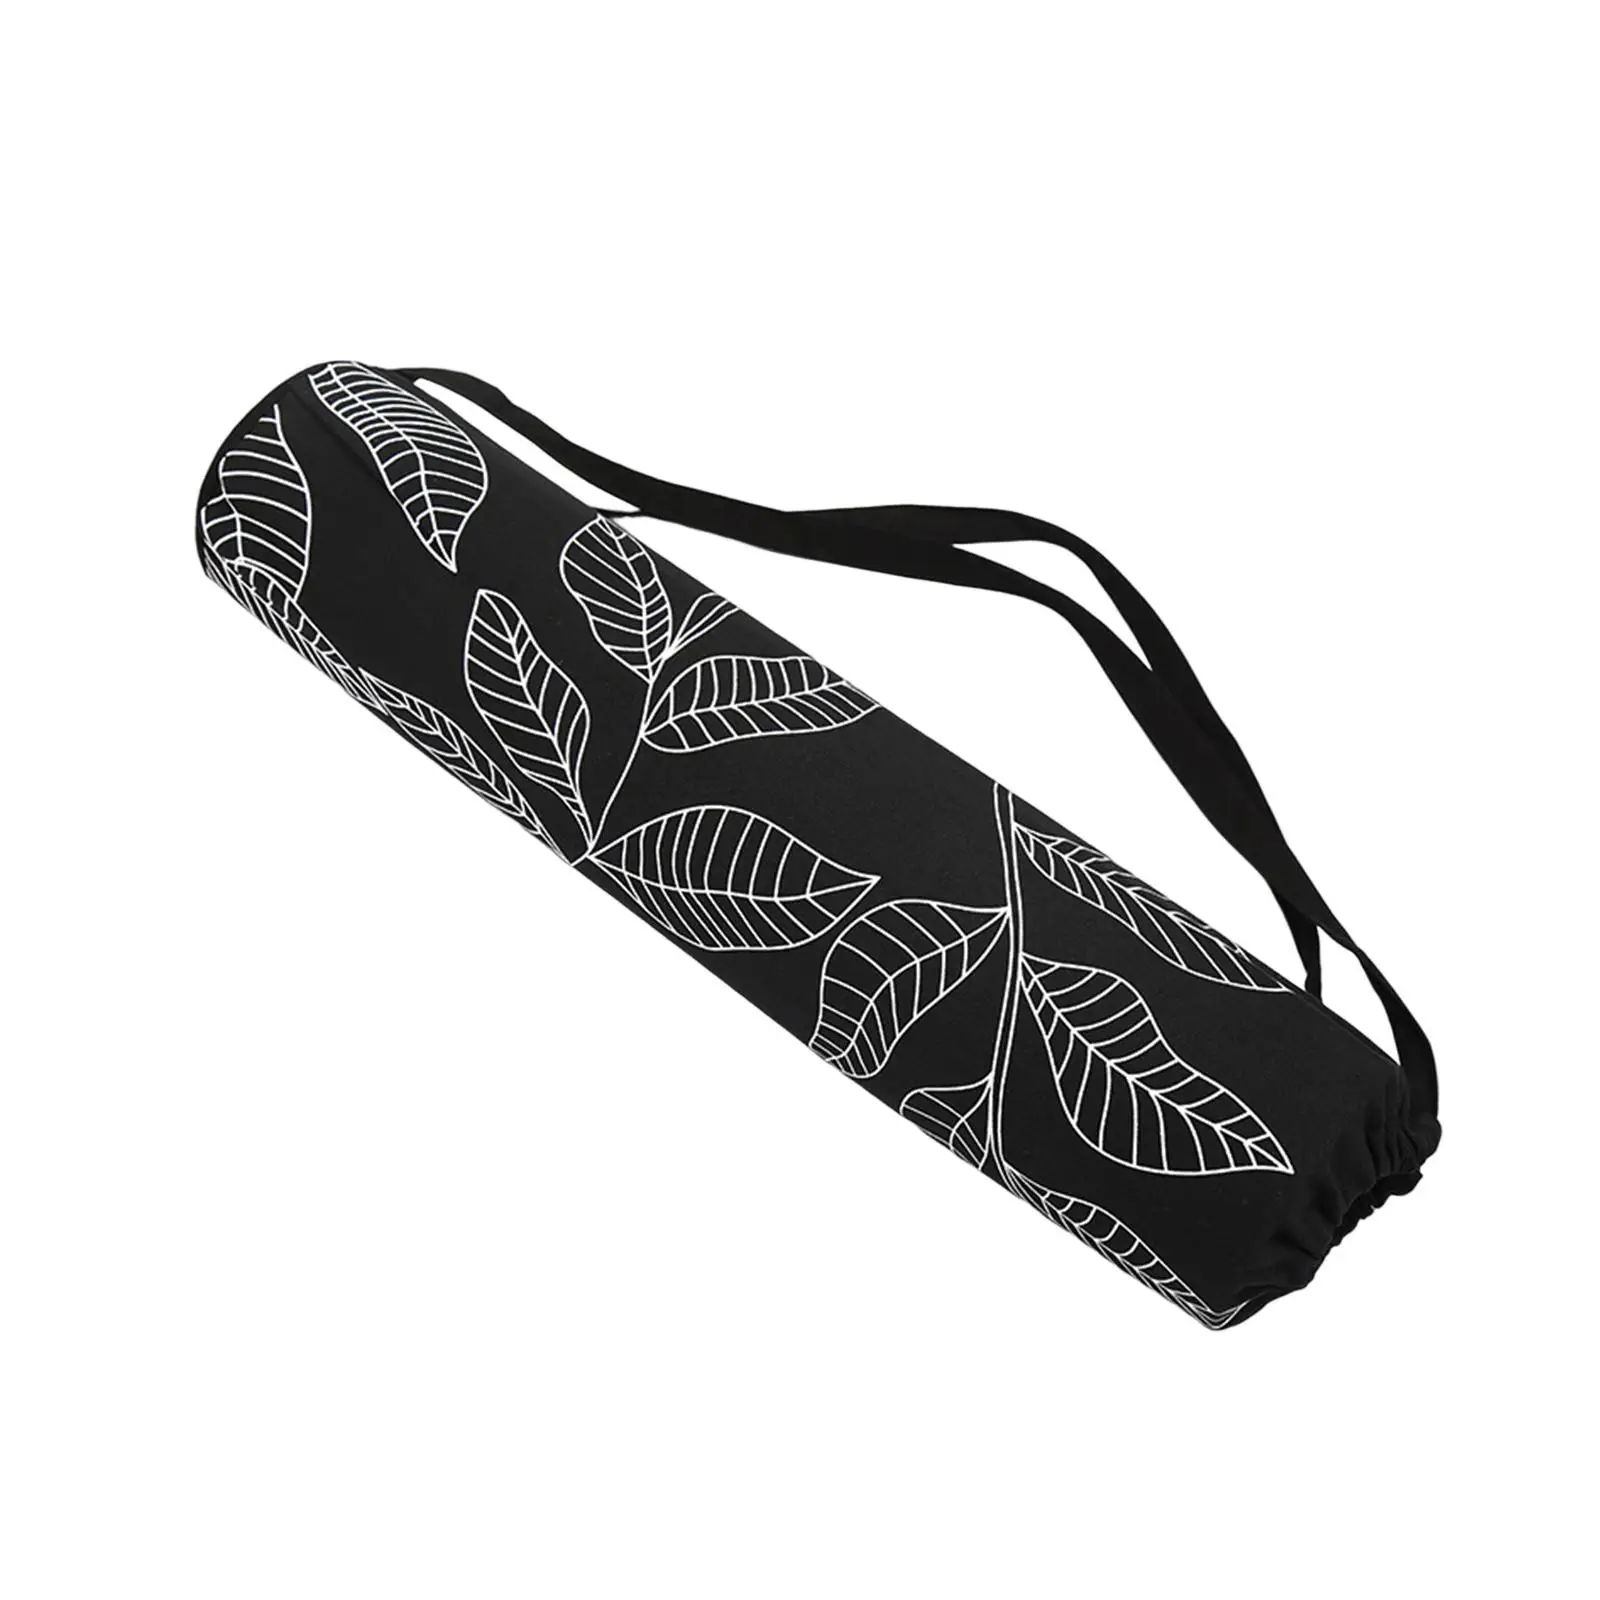 Travel Yoga Mat Carrier Bag for 1/4